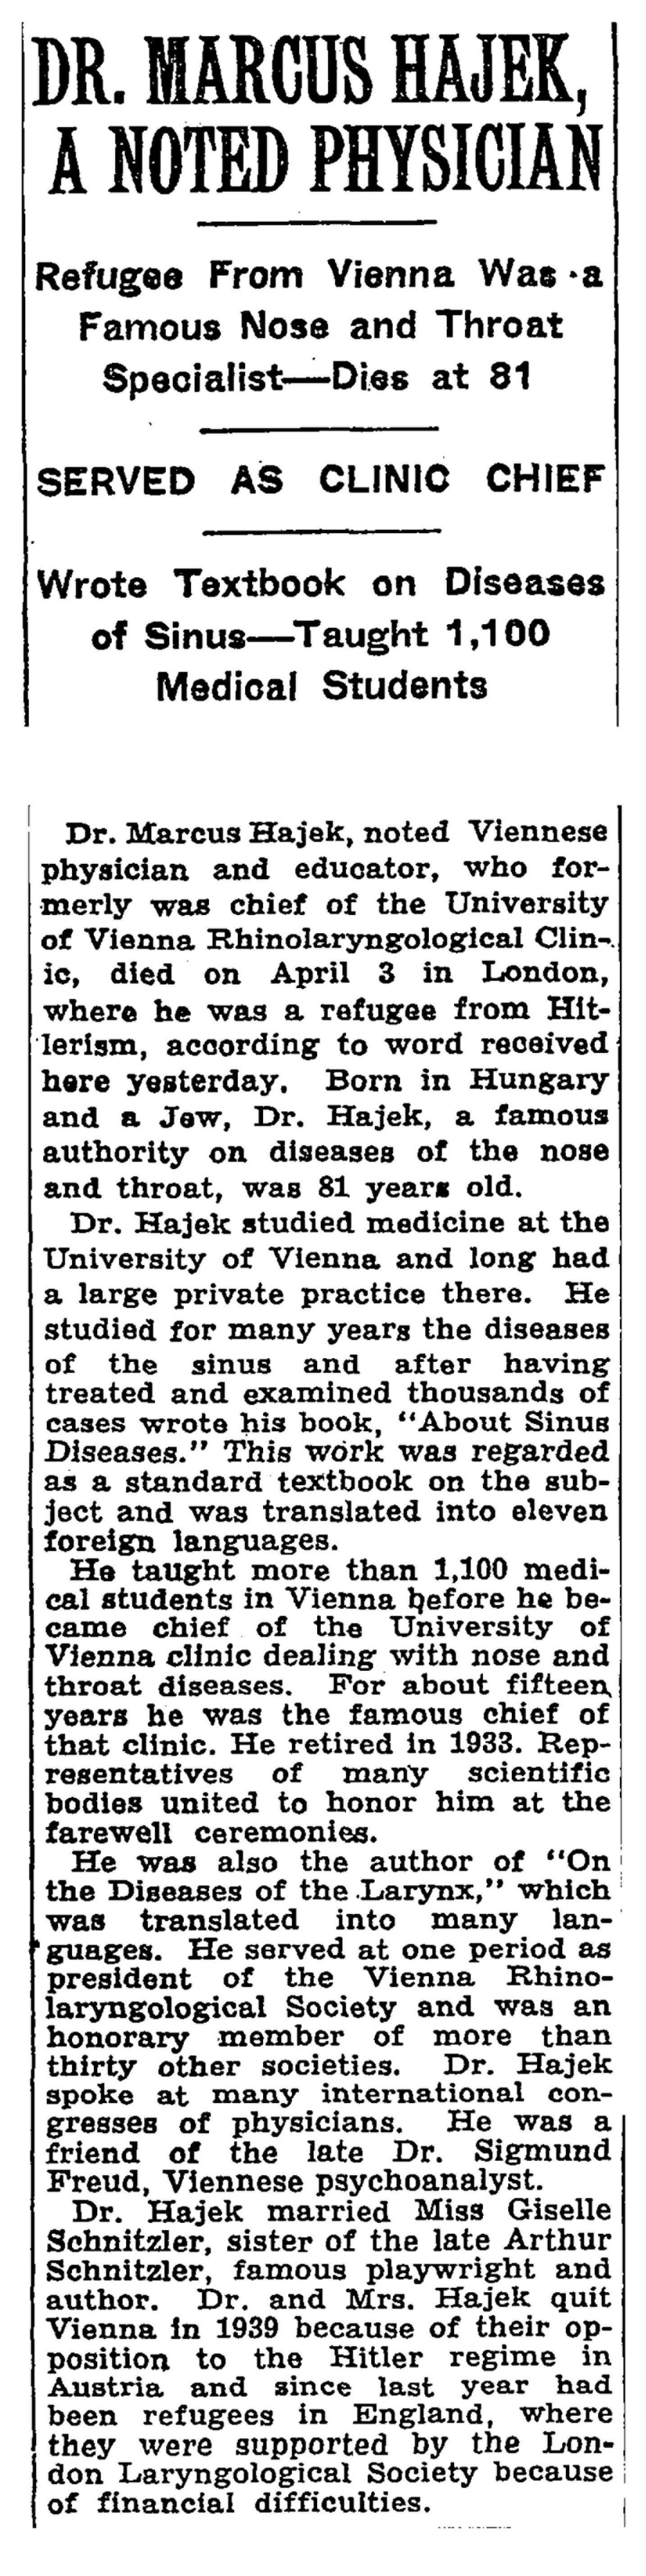 Nachruf auf Markus Hajek in der New York Times am 23. April 1941 